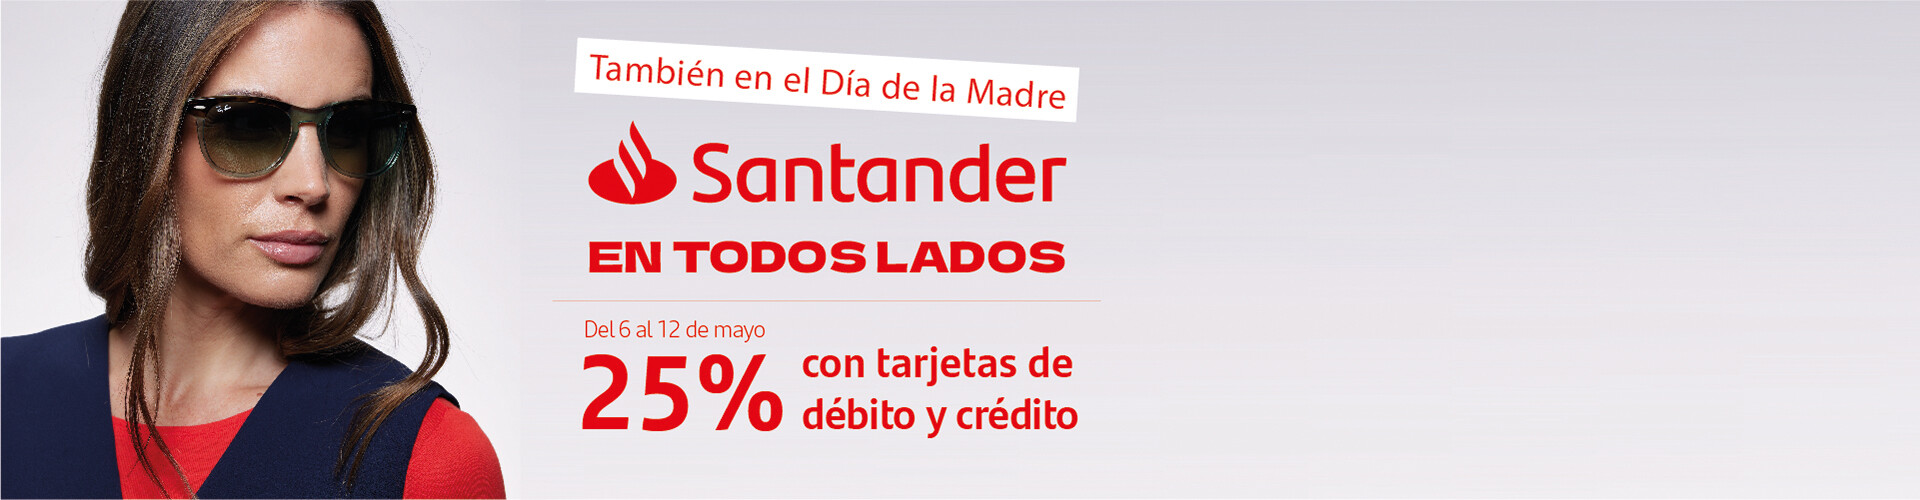 Santander dia de la madre